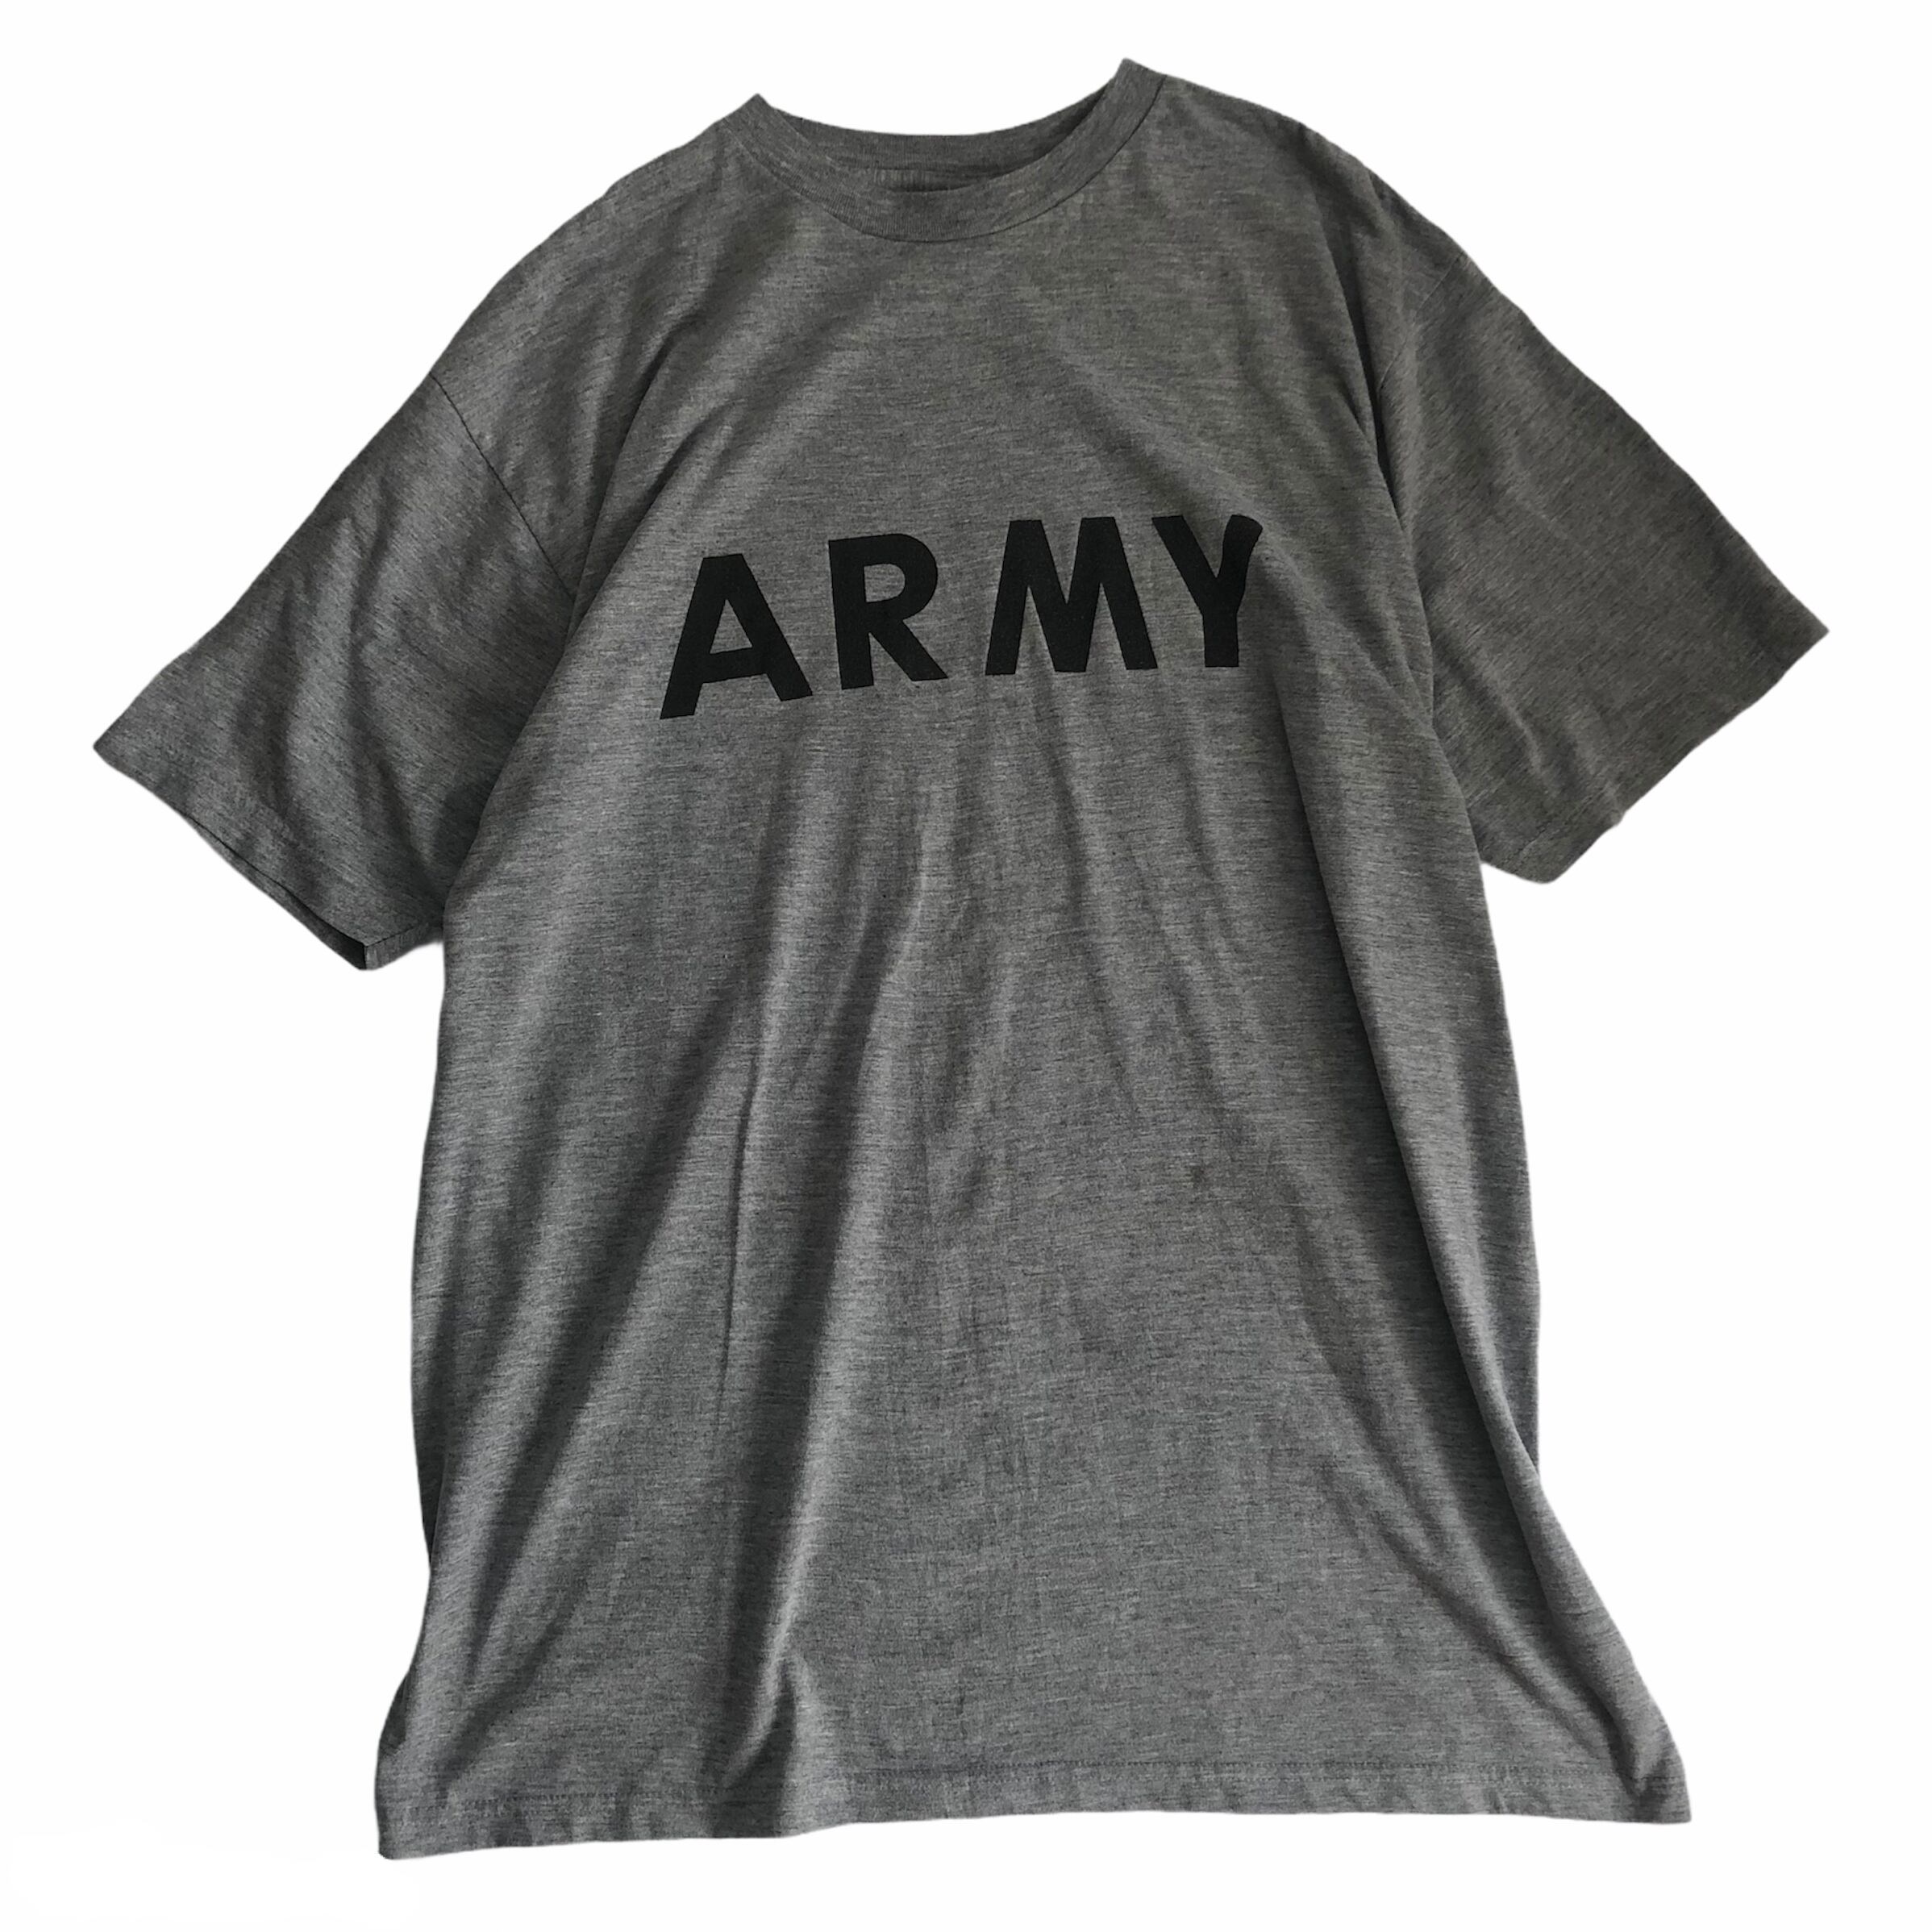 U.S.Army トレーニング Tシャツ USA製 ビンテージ 古着 ヴィンテージ